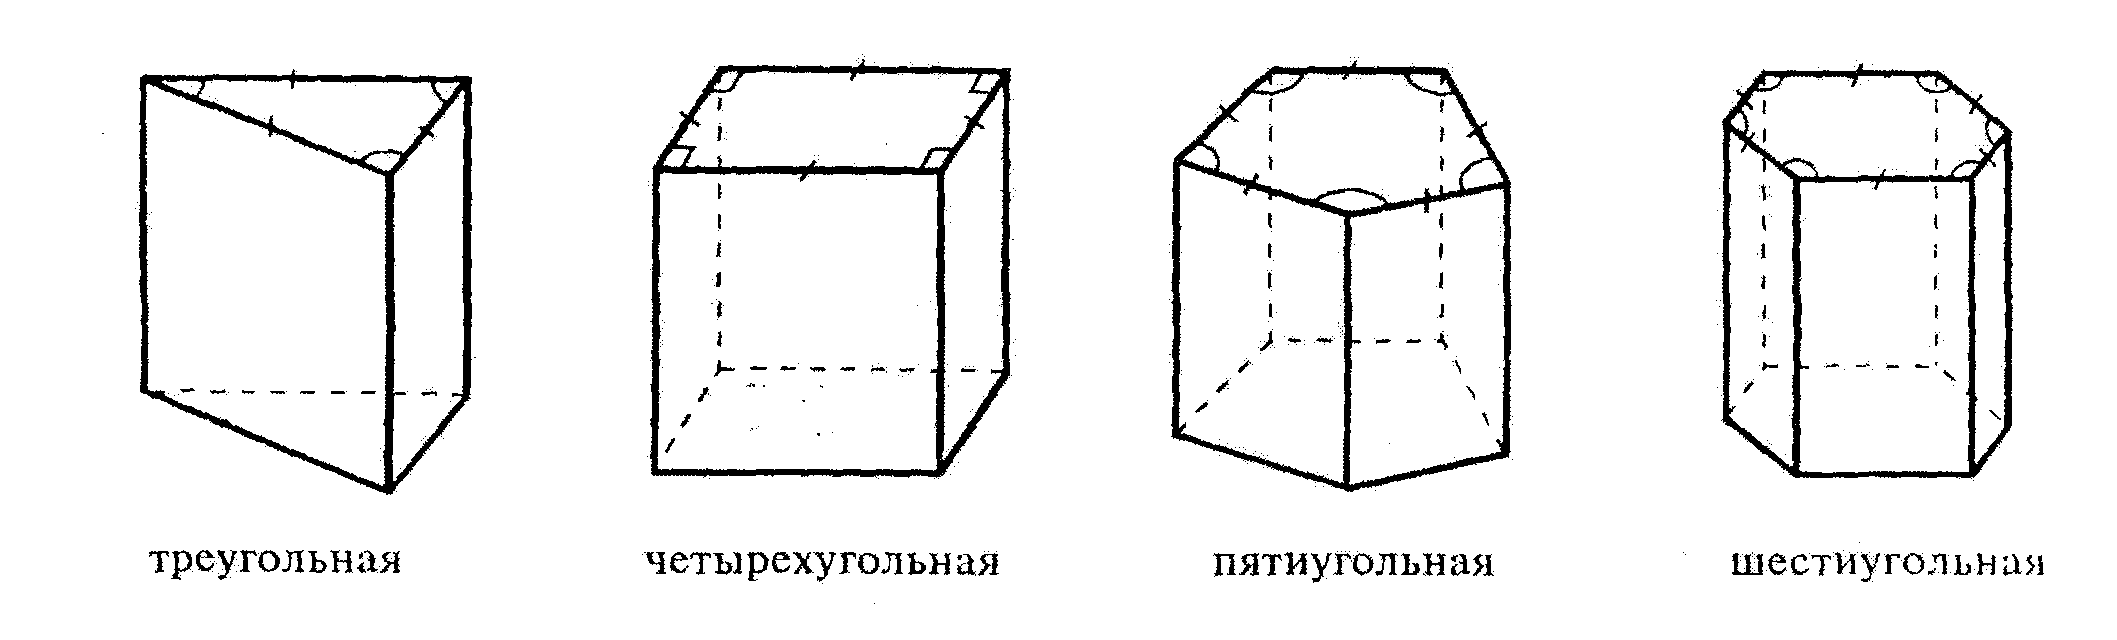 Треугольная Призма четырехугольная Призма